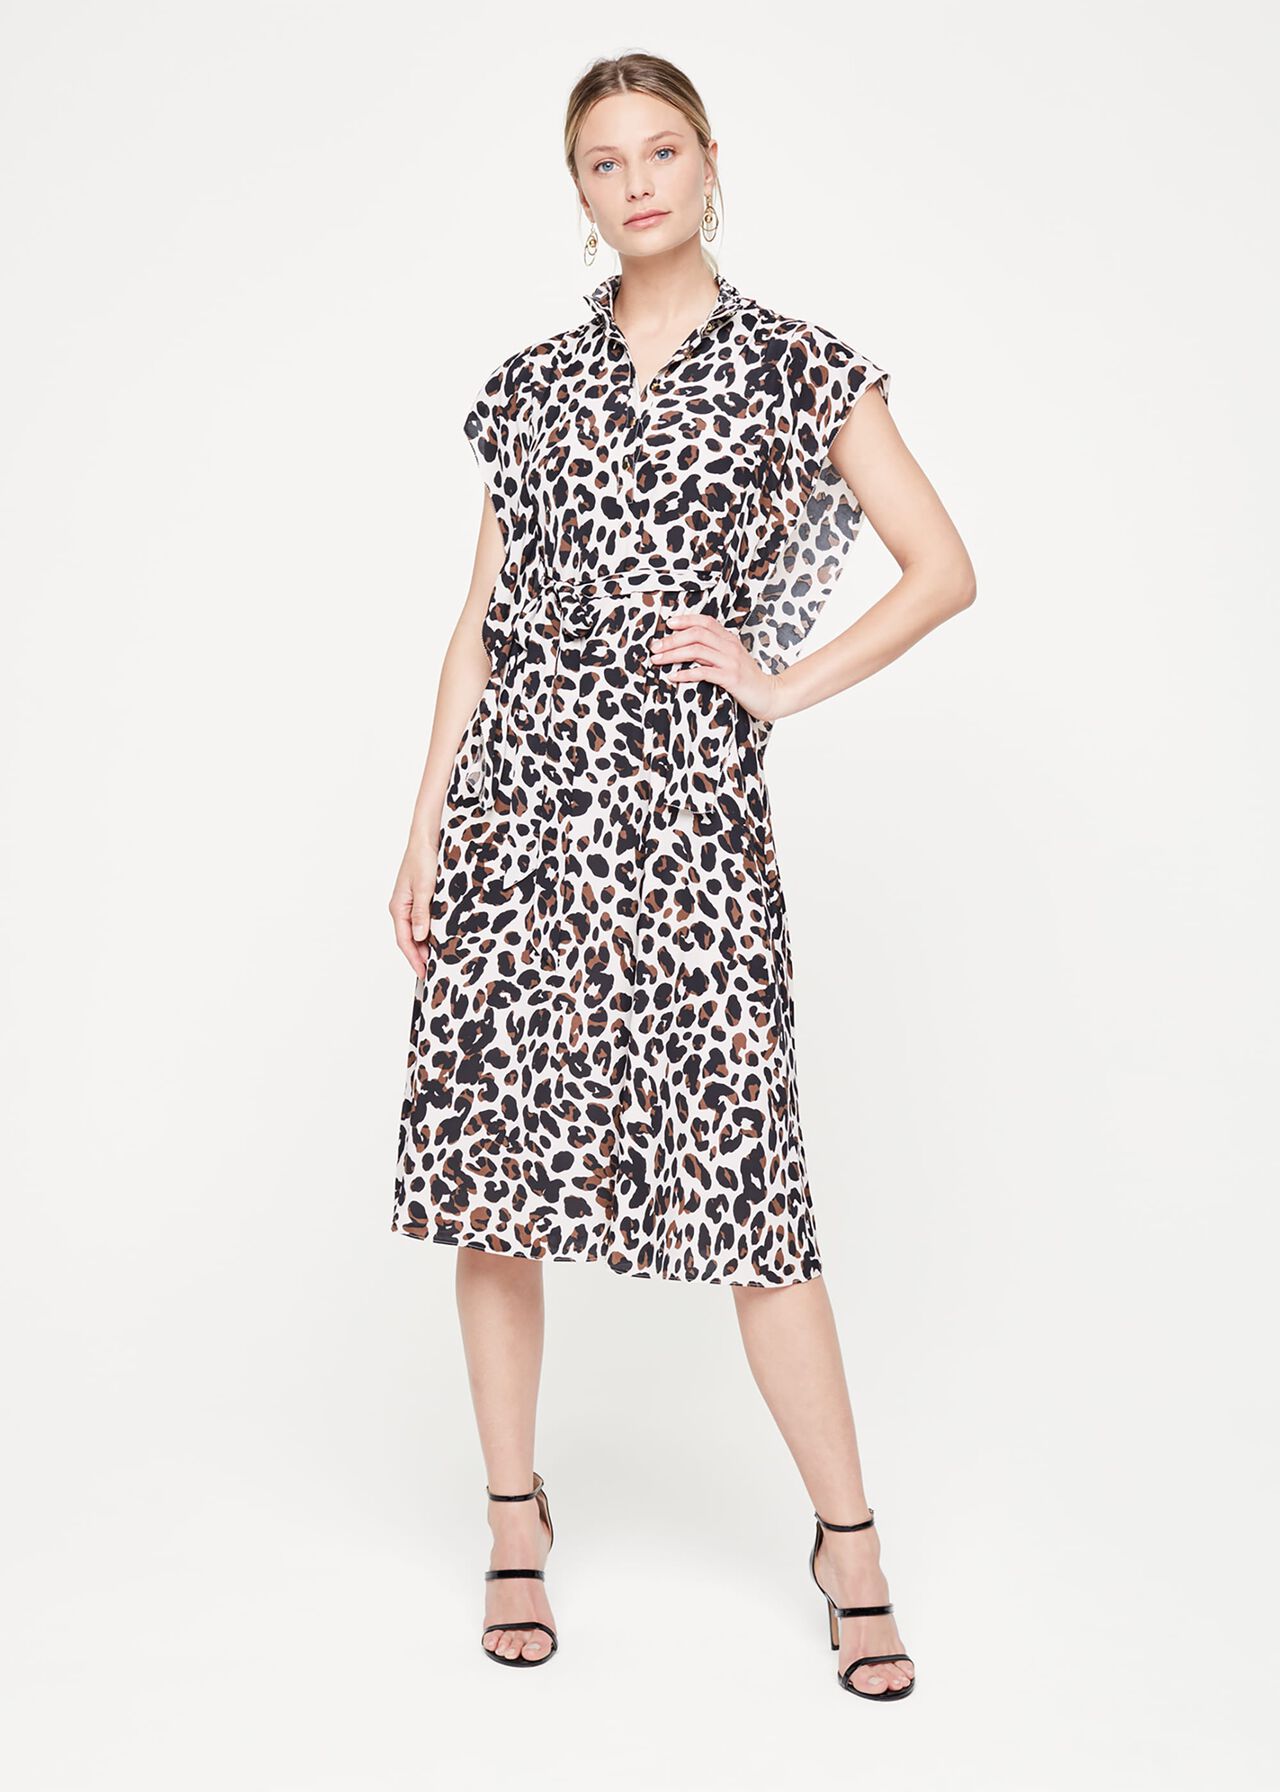 Trudy Leopard Print Dress